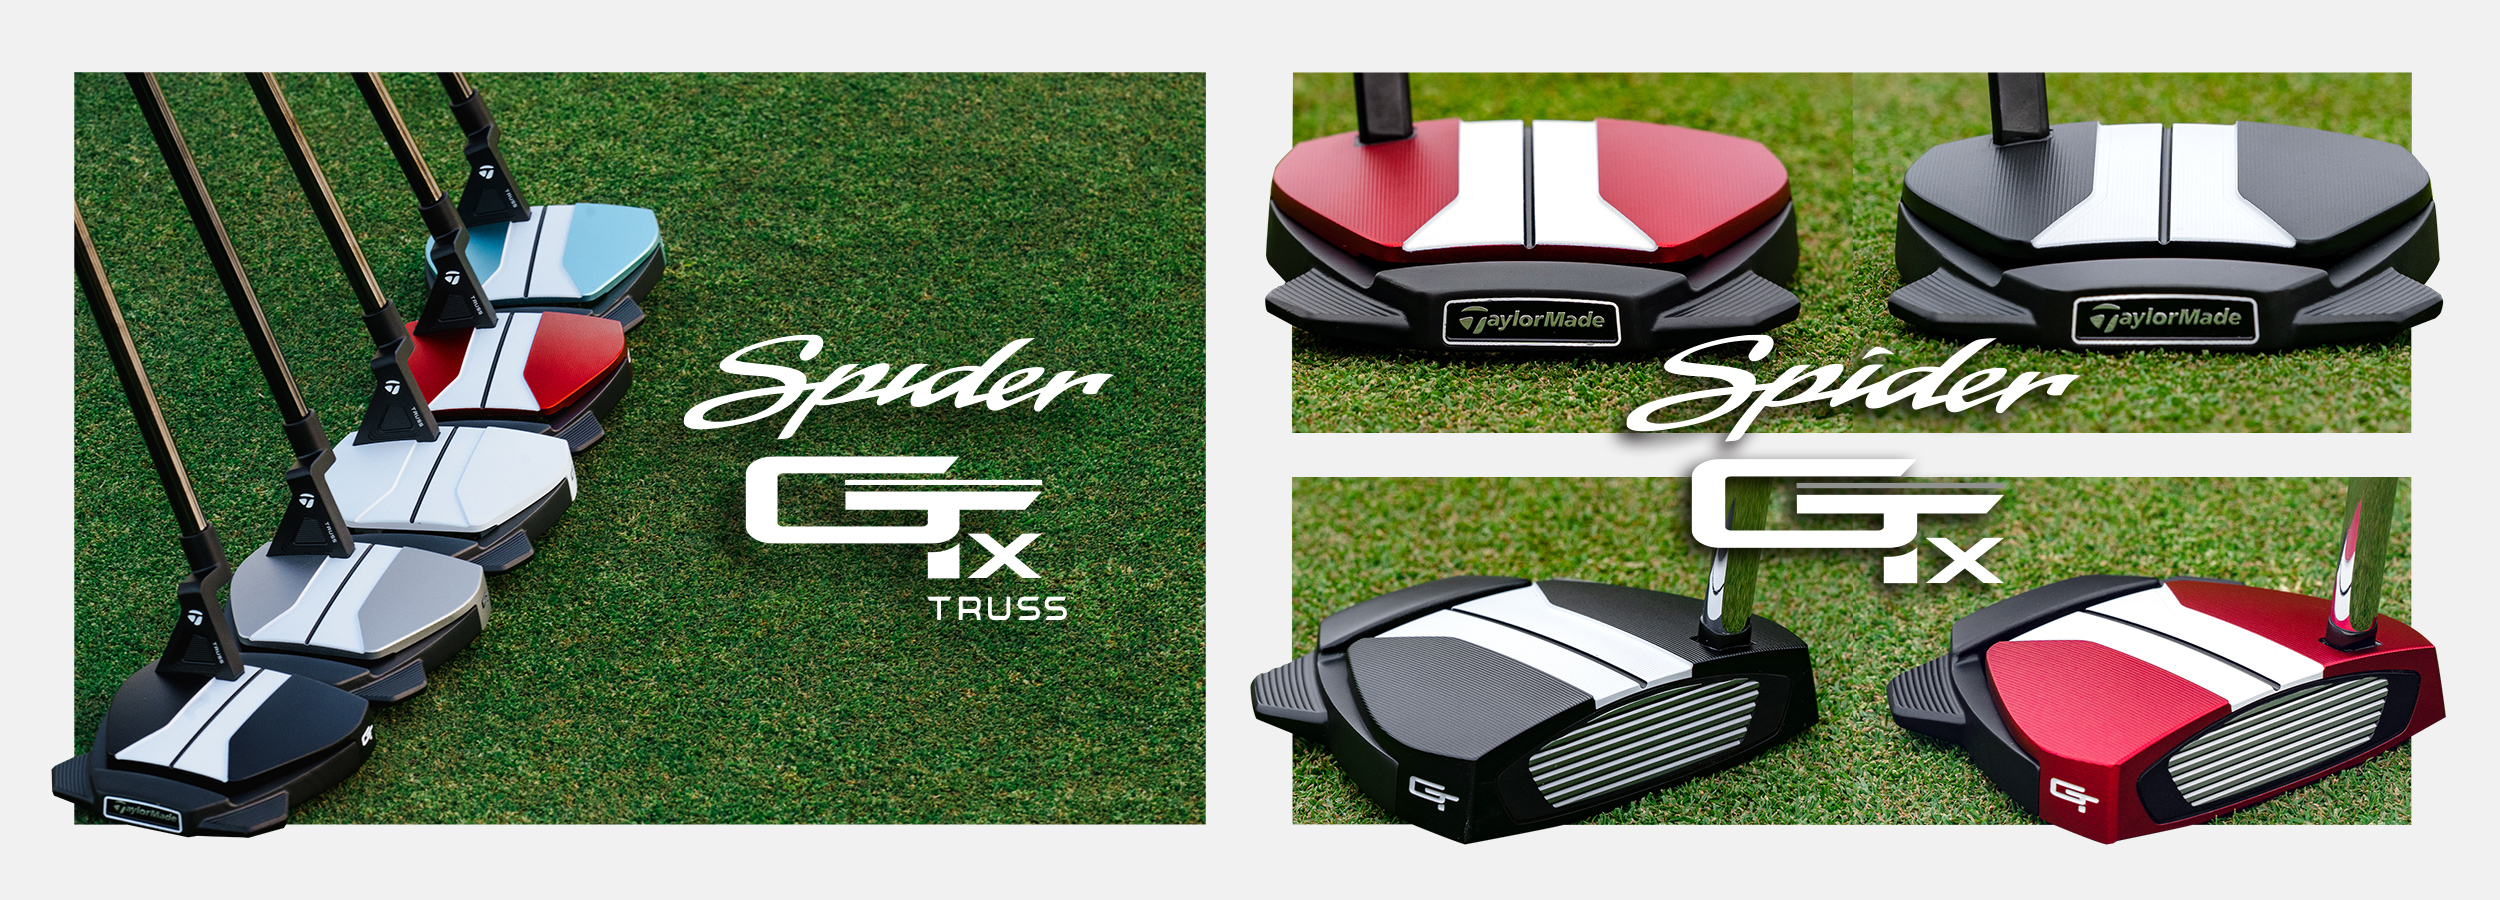 スパイダーGT X アイスブルー トラスヒール パター | SPIDER GT X ICE BLUE TRUSS | TaylorMade Golf  | テーラーメイド ゴルフ公式サイト